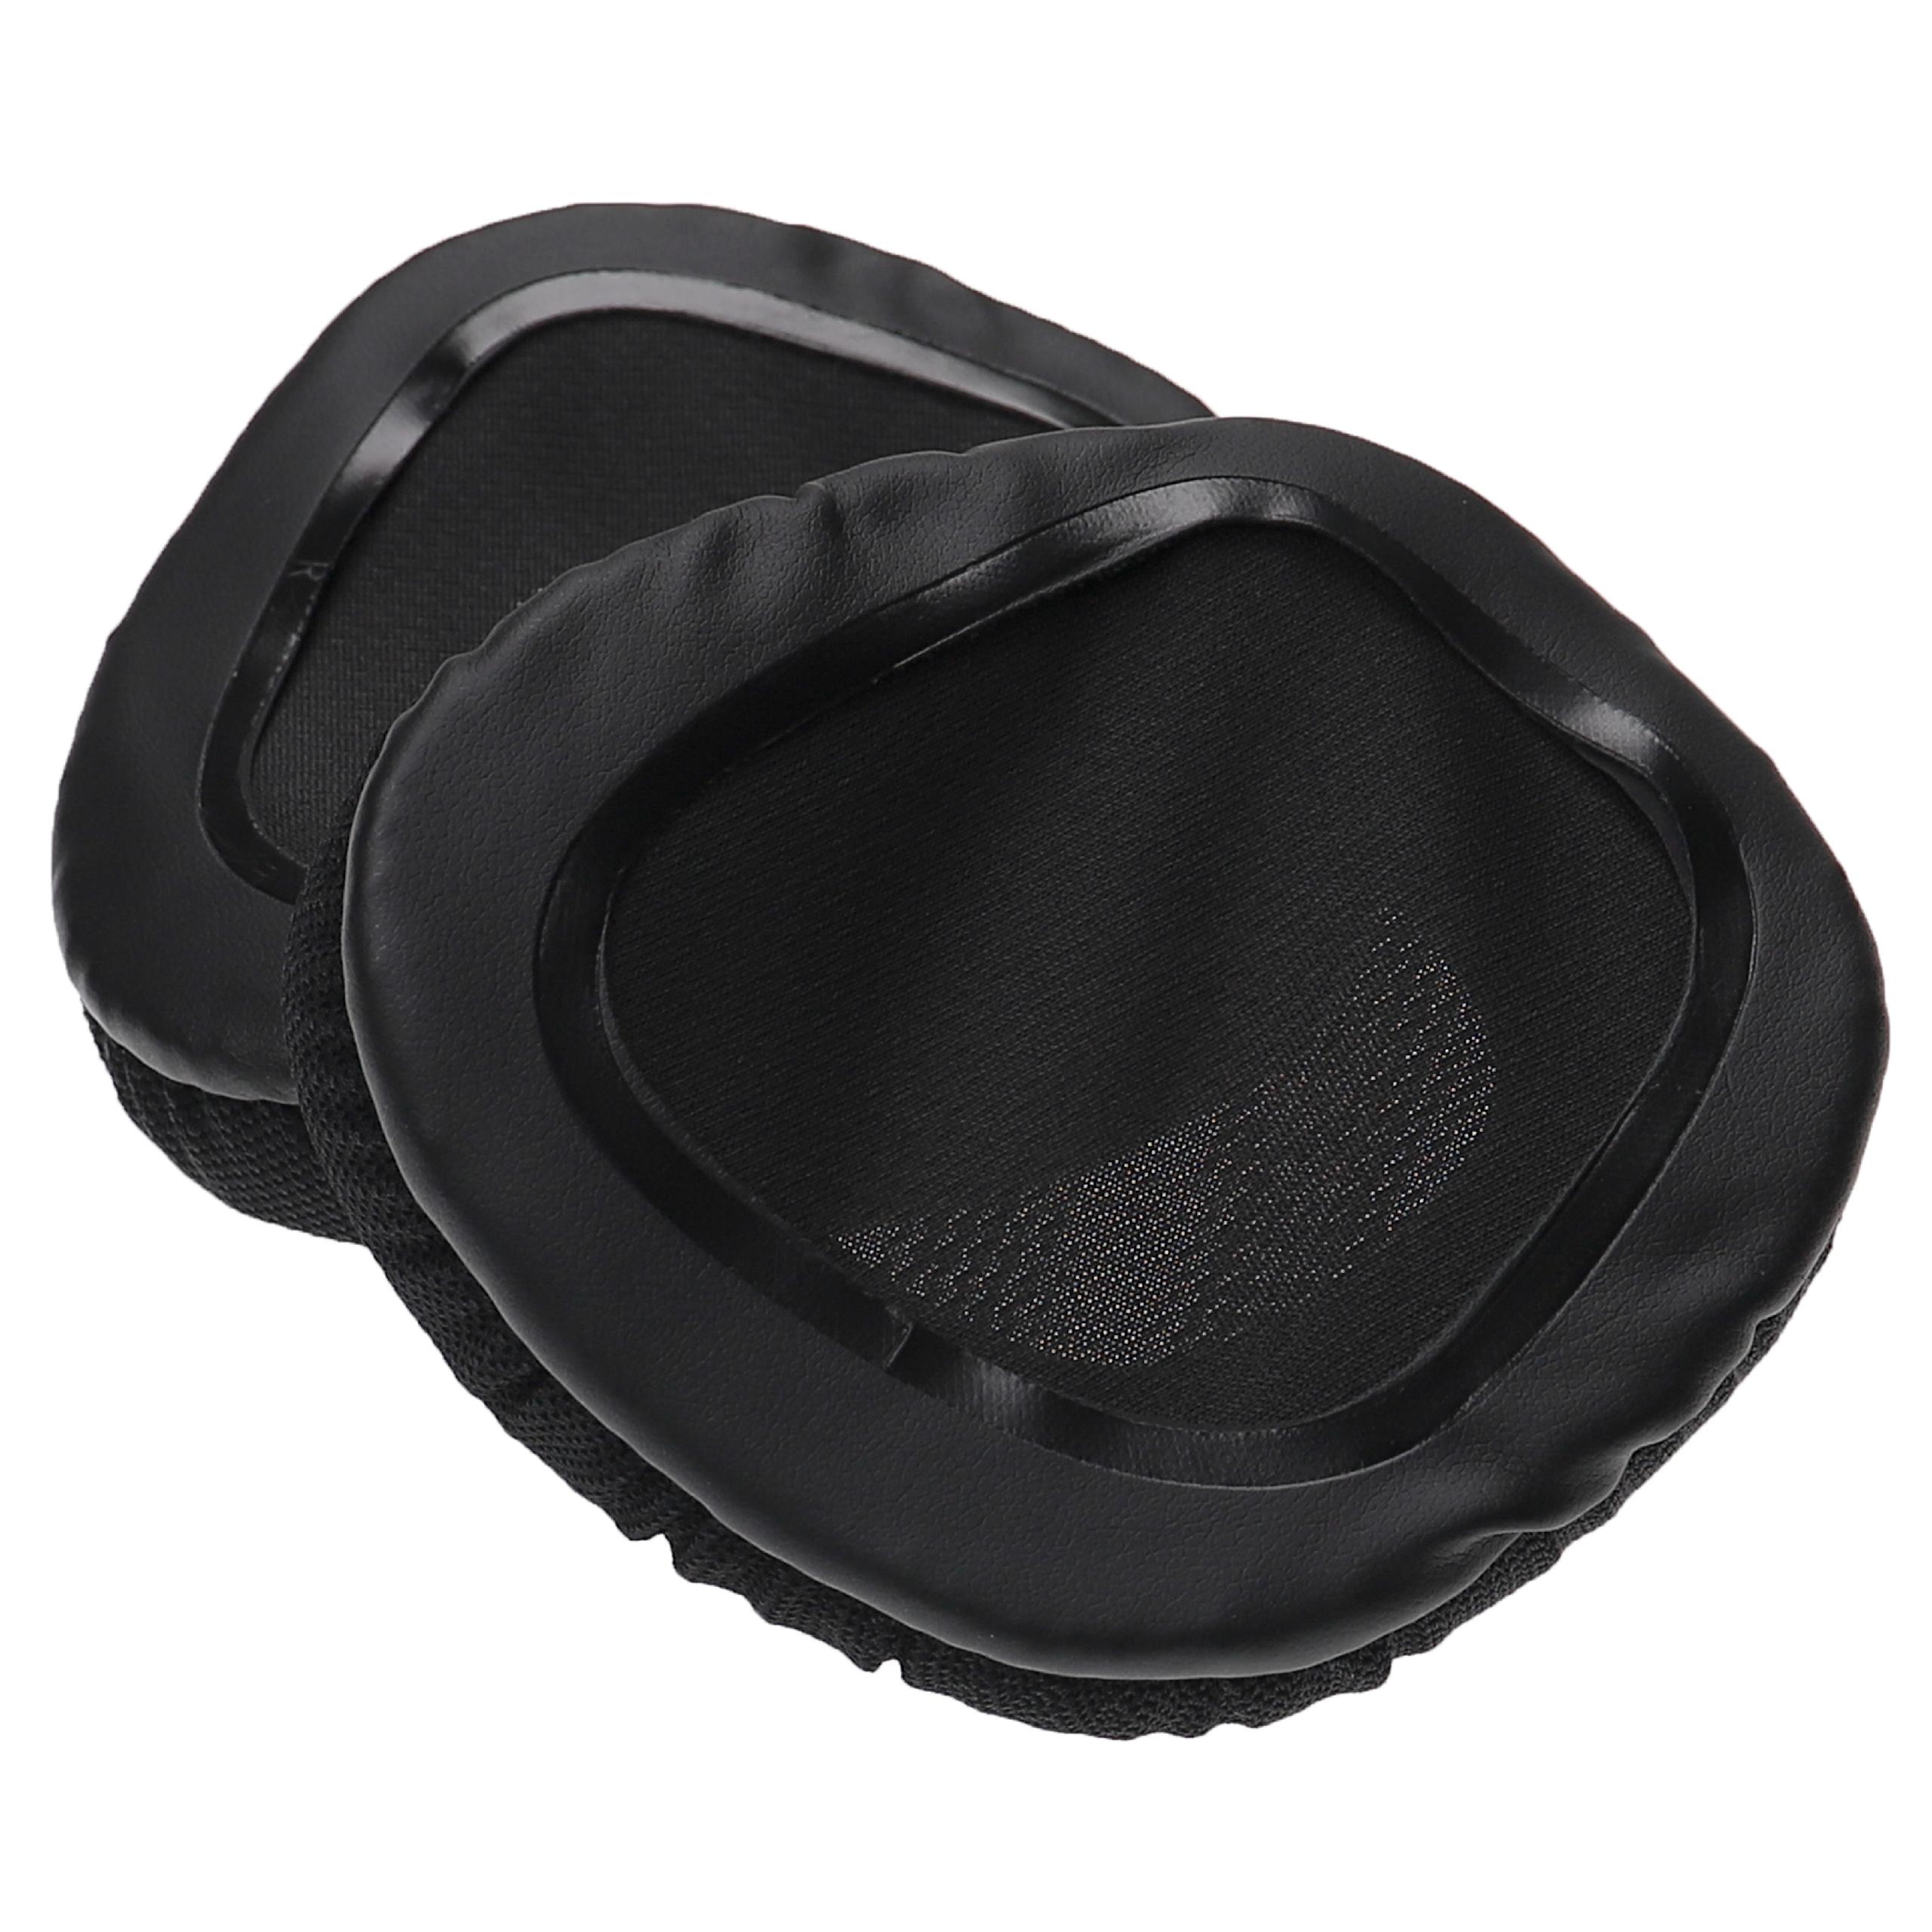 Poduszki do słuchawek Corsair Void PRO RGB - pady miękkie, grub. 49 mm, czarny